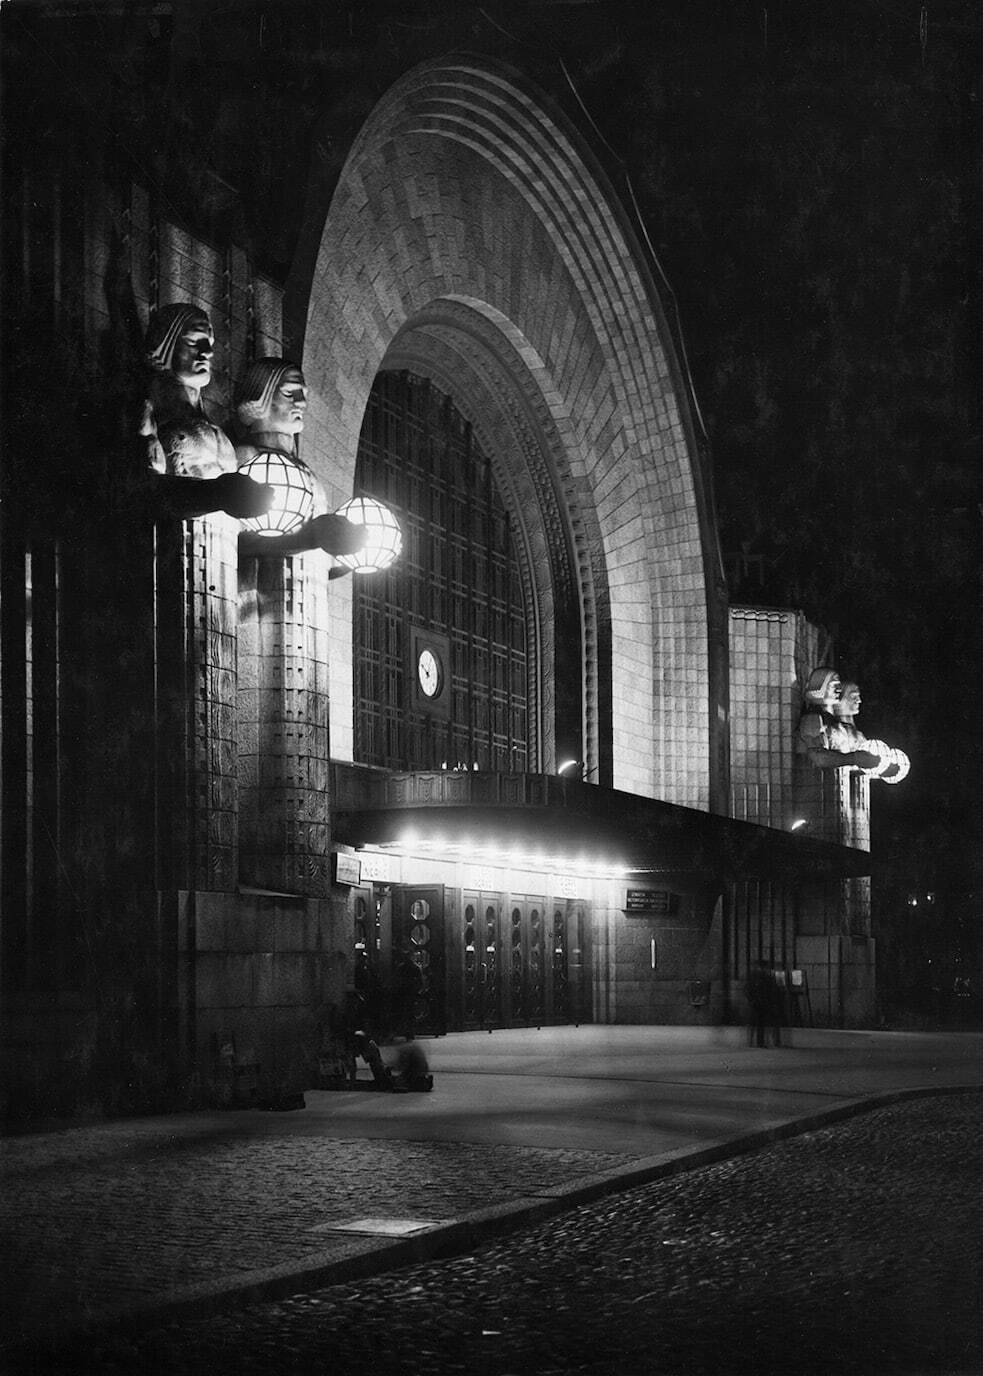 夜のヘルシンキ中央駅玄関、エーミル・ヴィークストロムによる彫像《ランタンを持つ人》 Photo ©Museum of Finnish Architecture/ Foto Roos